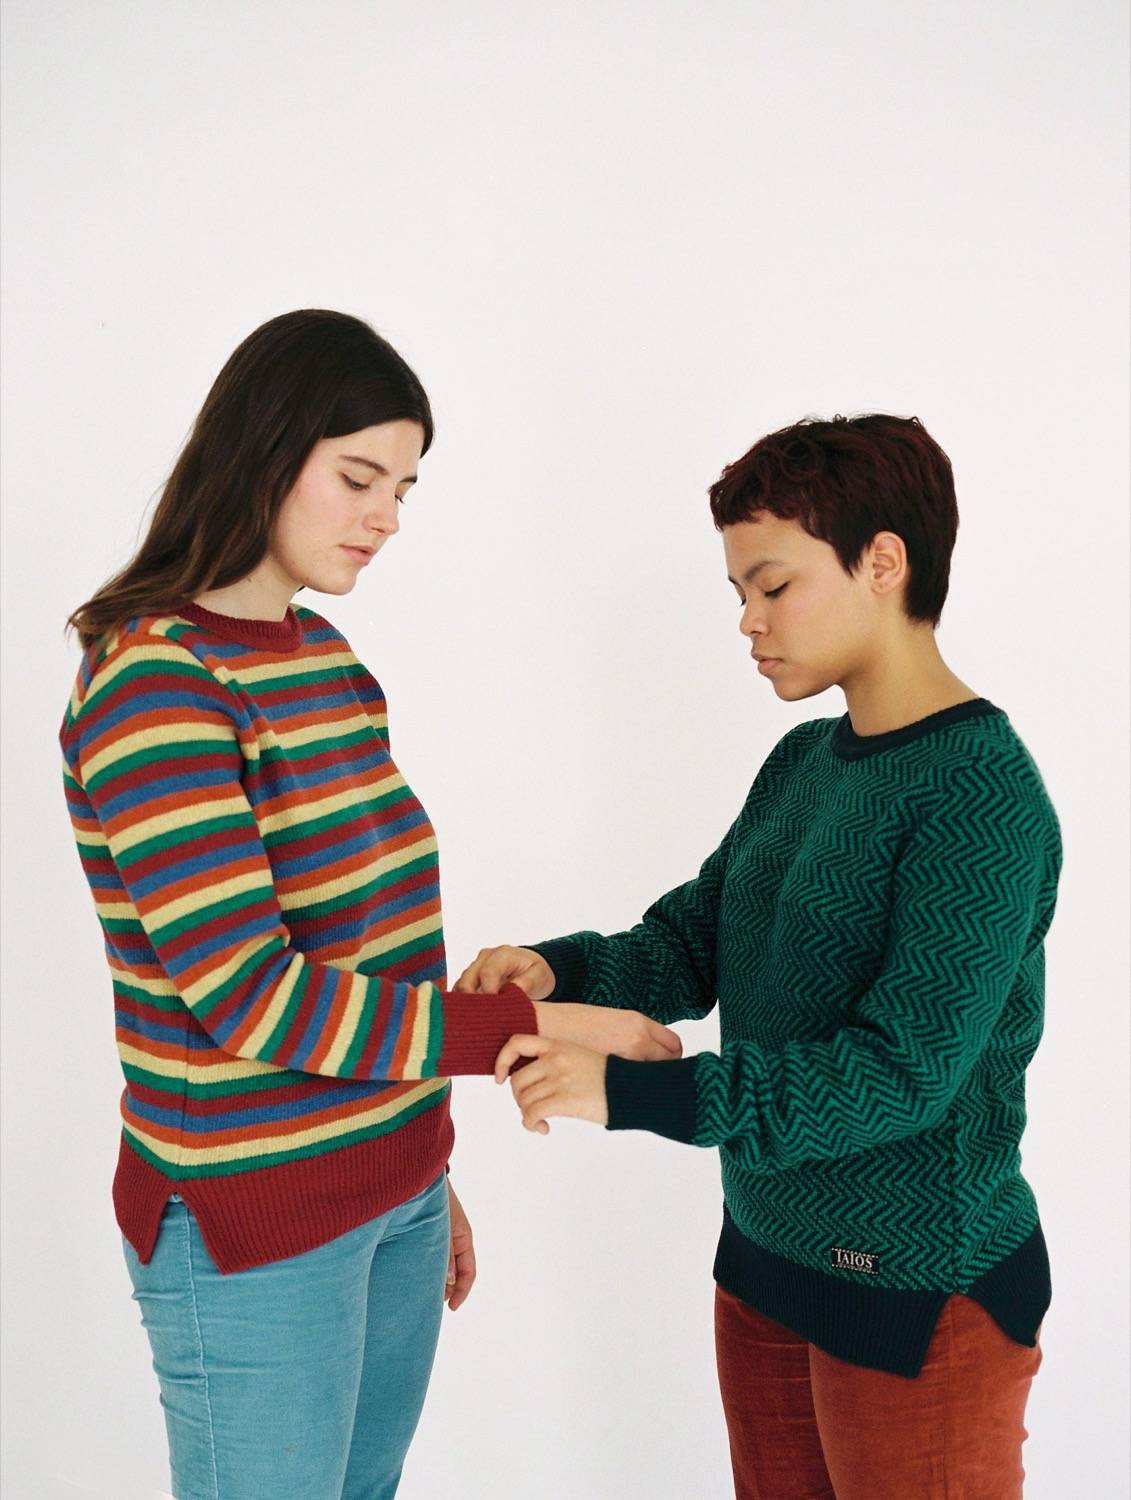 Una noia arregla la màniga del jersei a una altra. Ambdues porten jerseis iaios